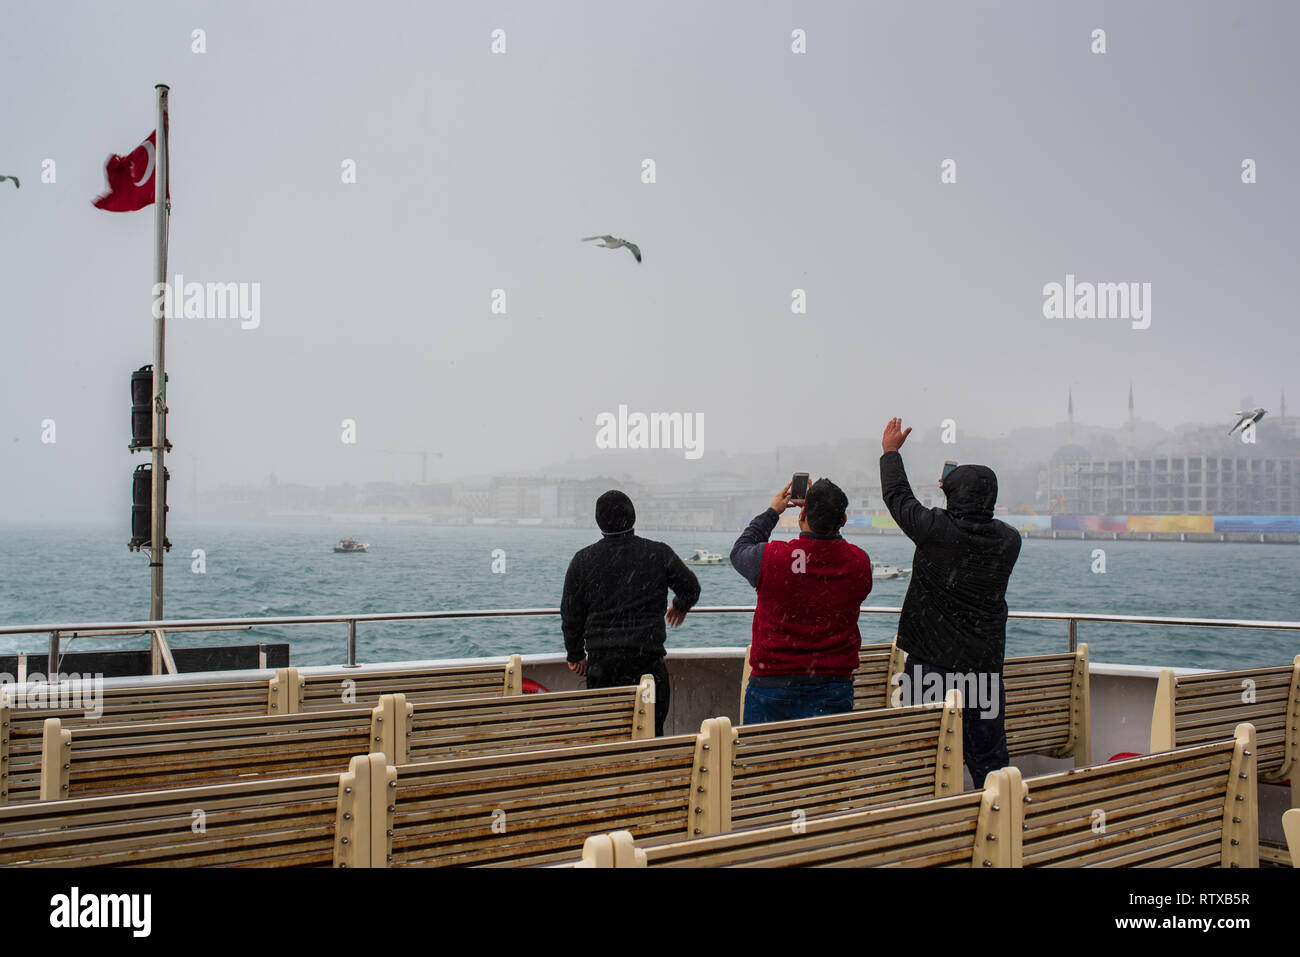 ISTANBUL, TURCHIA; inverno a Istanbul. Gli uomini in nevicata sul traghetto passeggeri Foto Stock